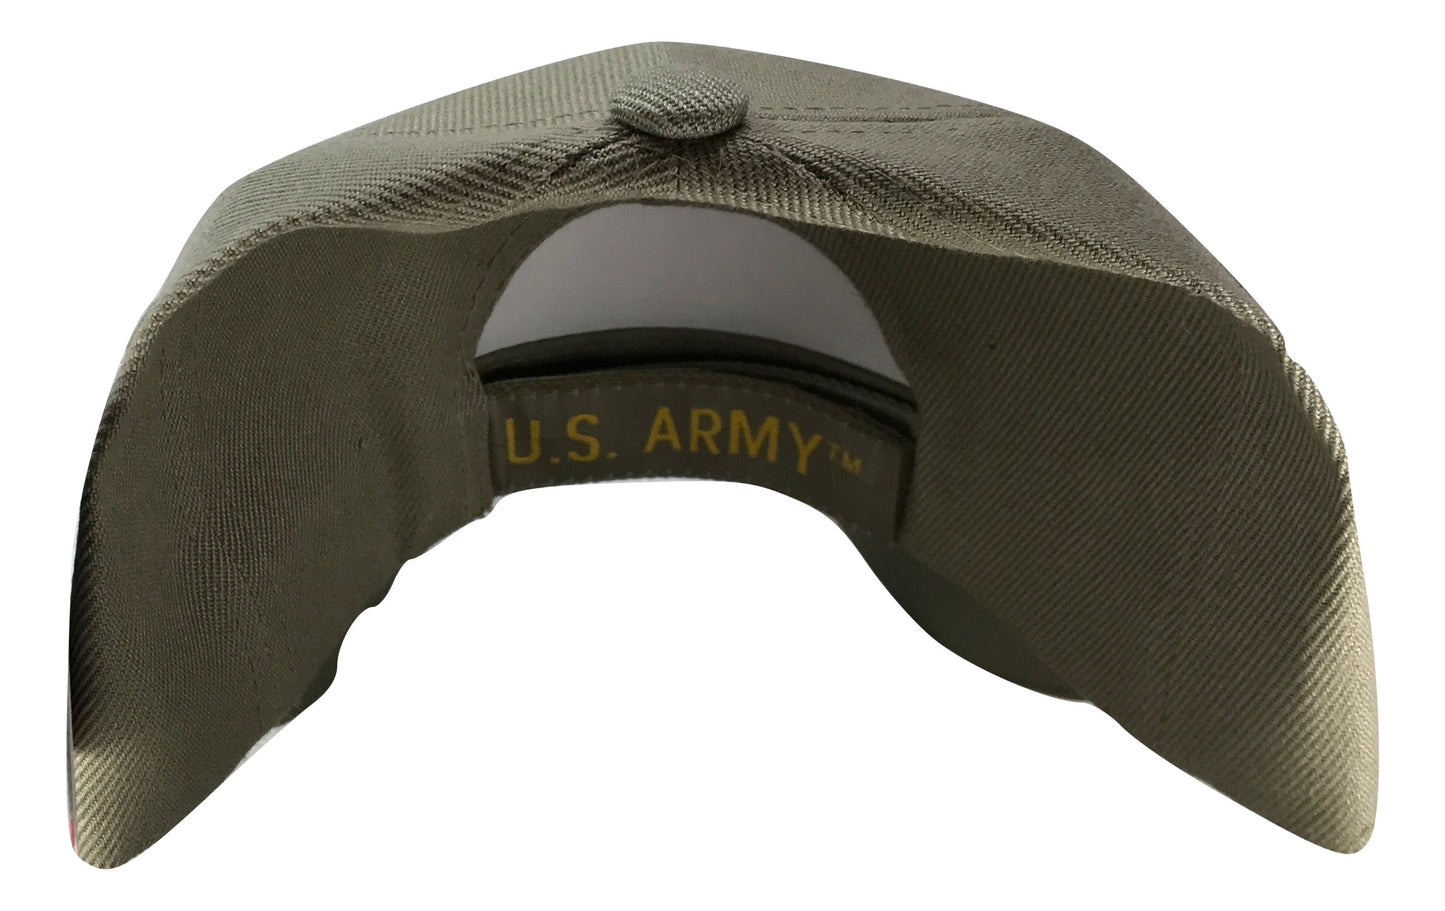 ARMY Adjustable Cap